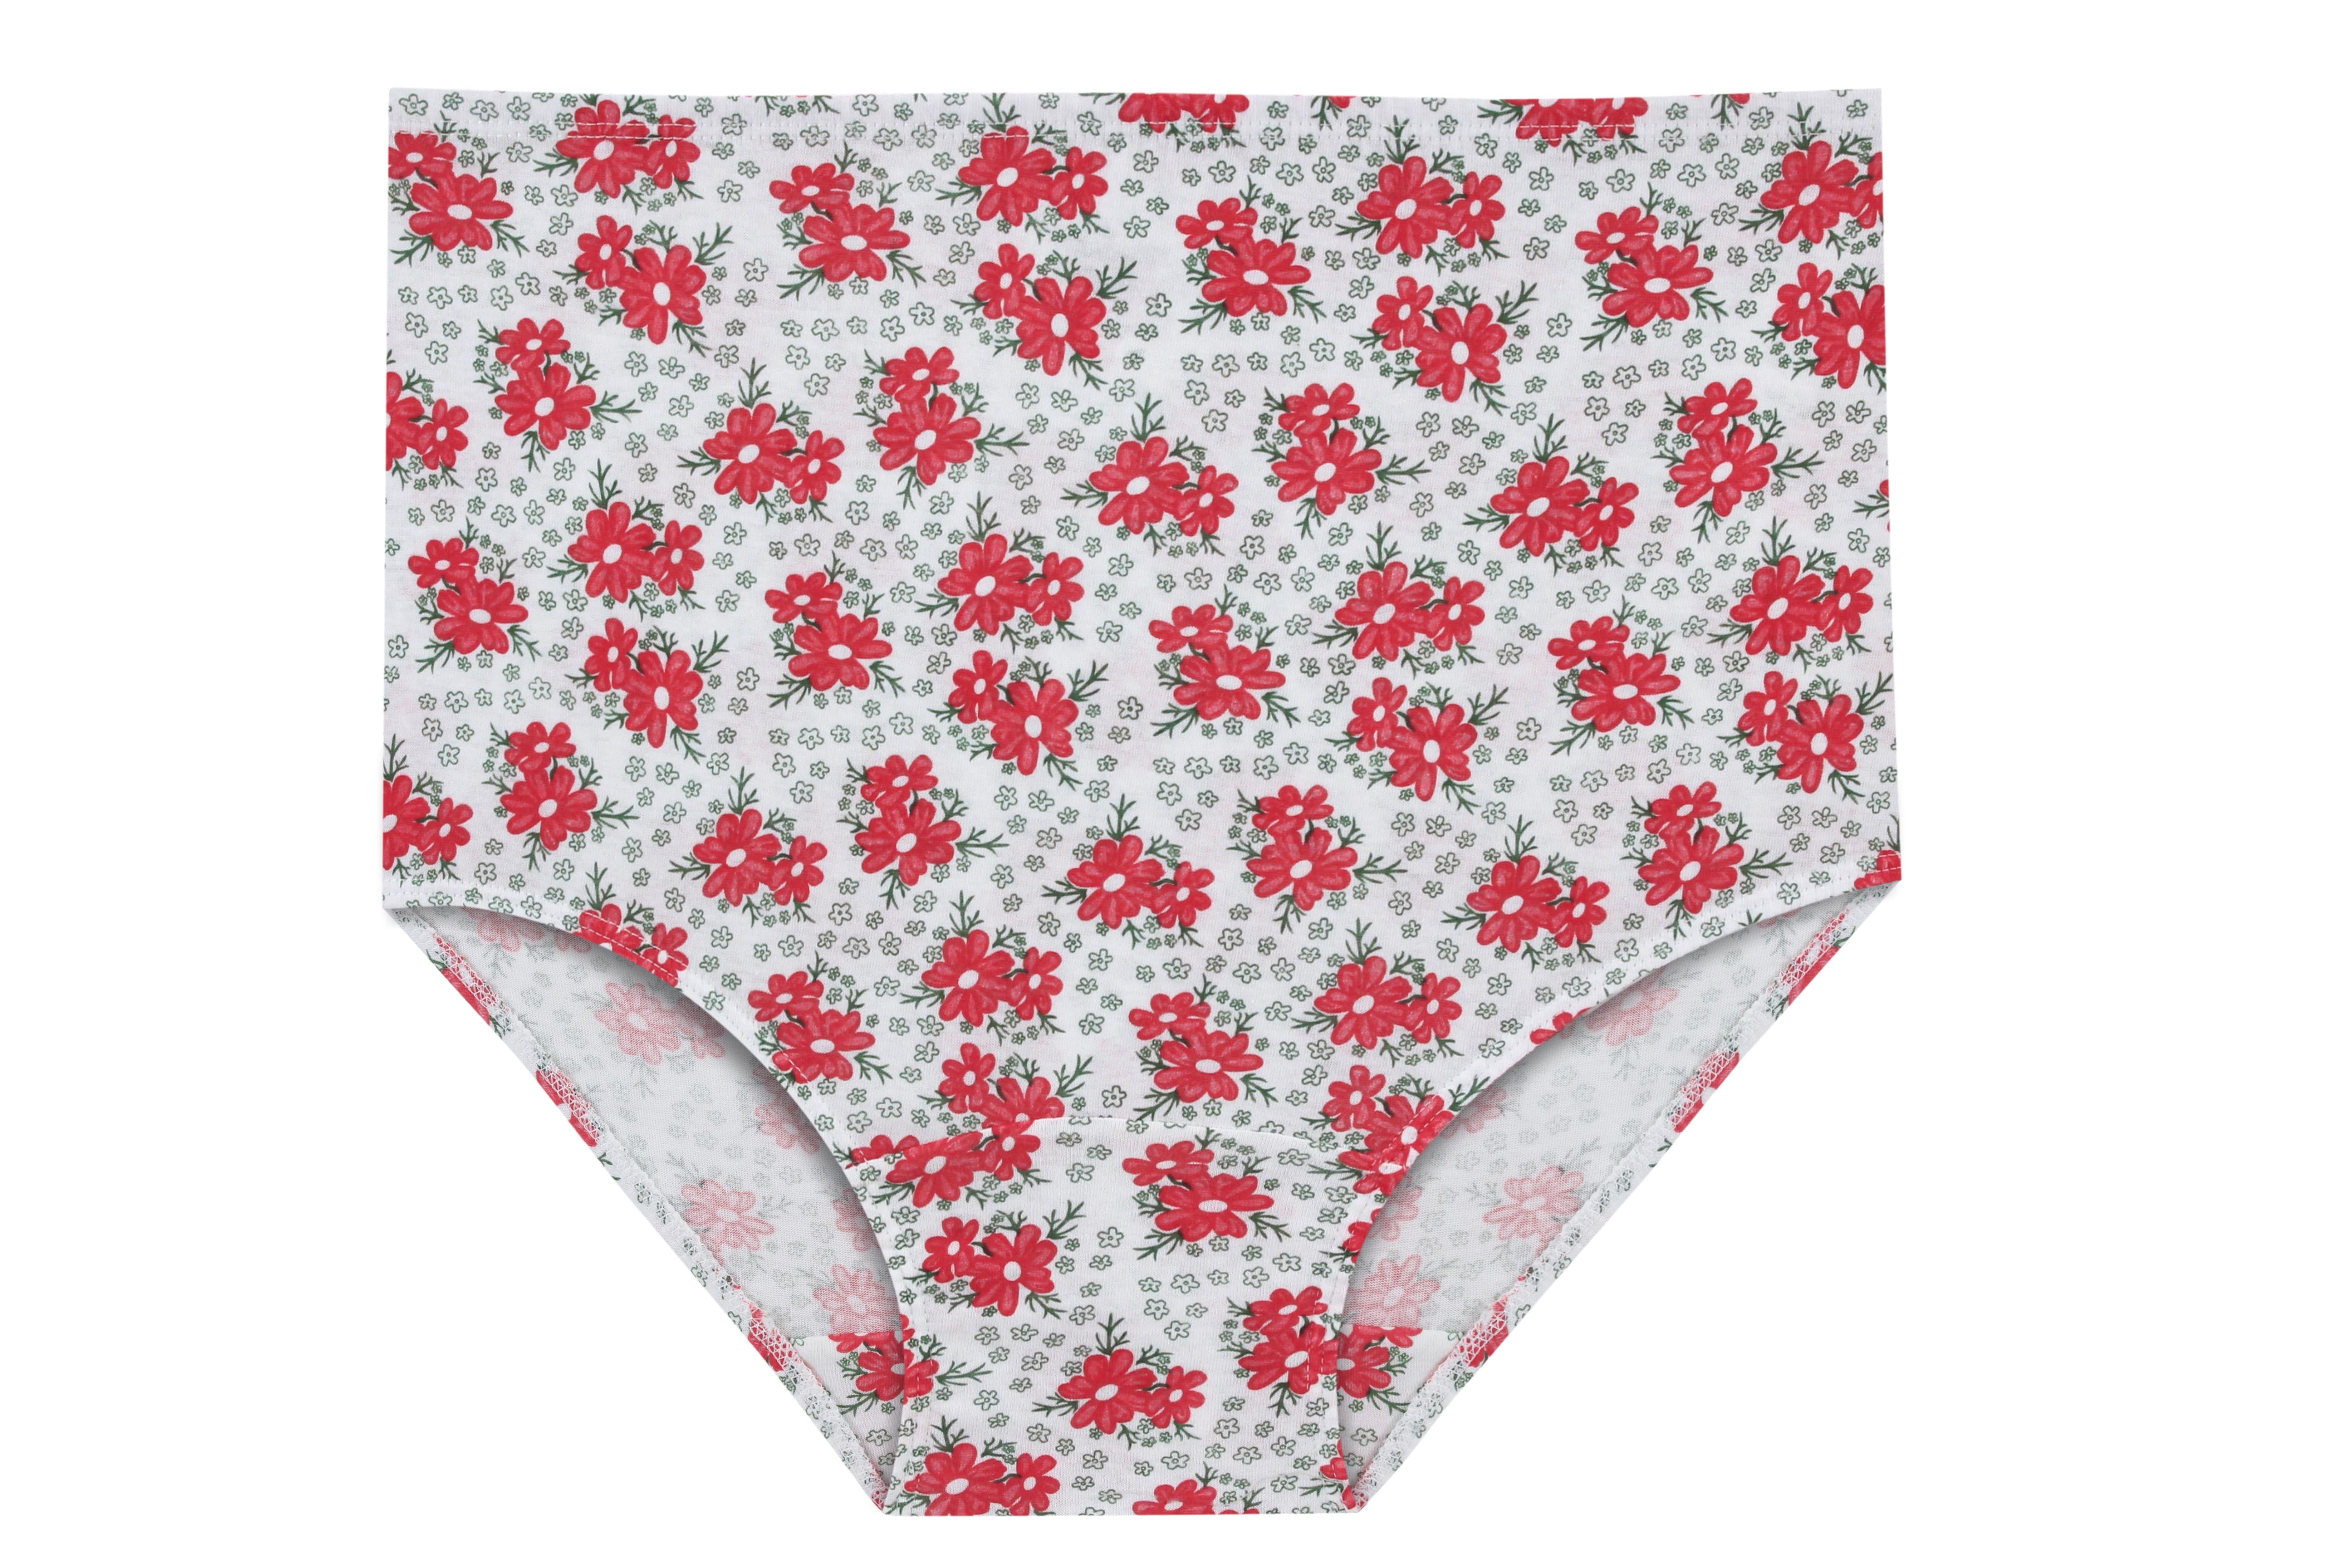 Women's Printed Maxi Briefs Underwear